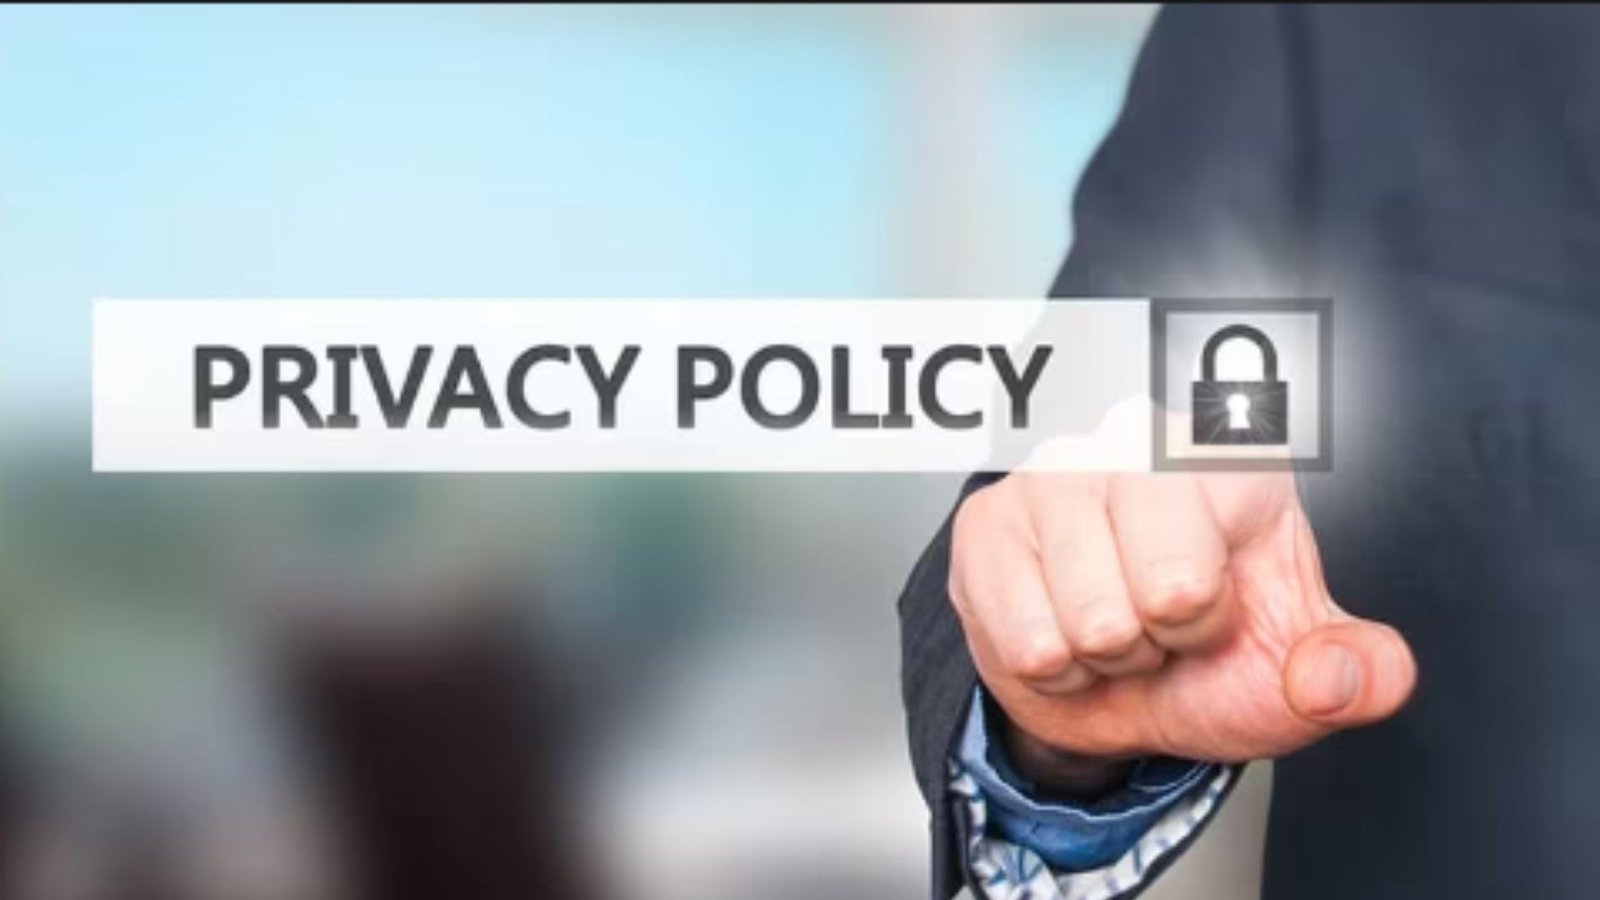 Un'immagine della politica sulla privacy.